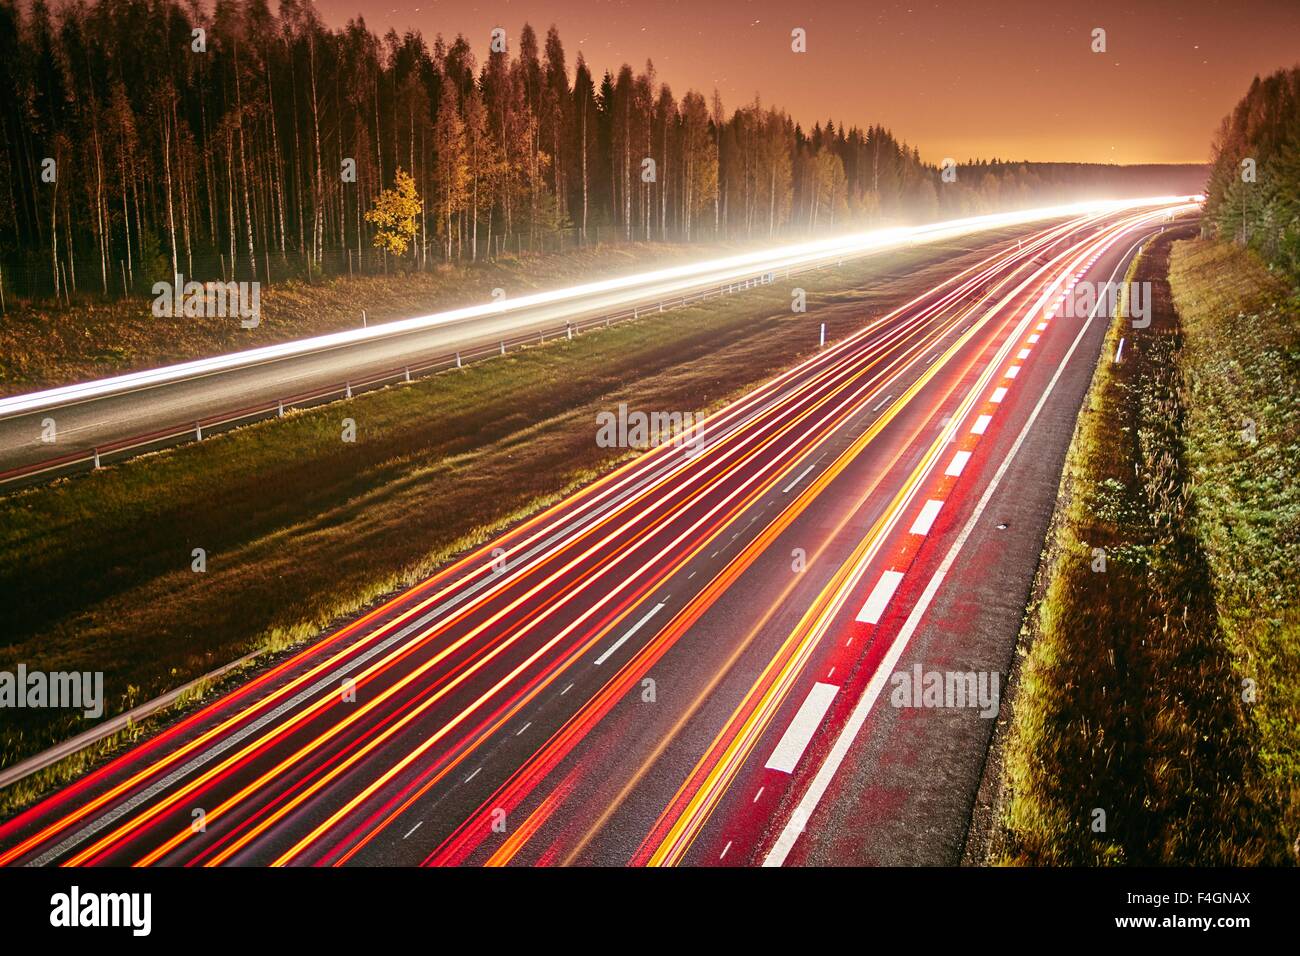 Die Lichtspuren des Autos auf einer Autobahn in der Nacht. Langzeitbelichtung des schnell fließenden Verkehrs in einer sternenklaren Nacht. Stockfoto